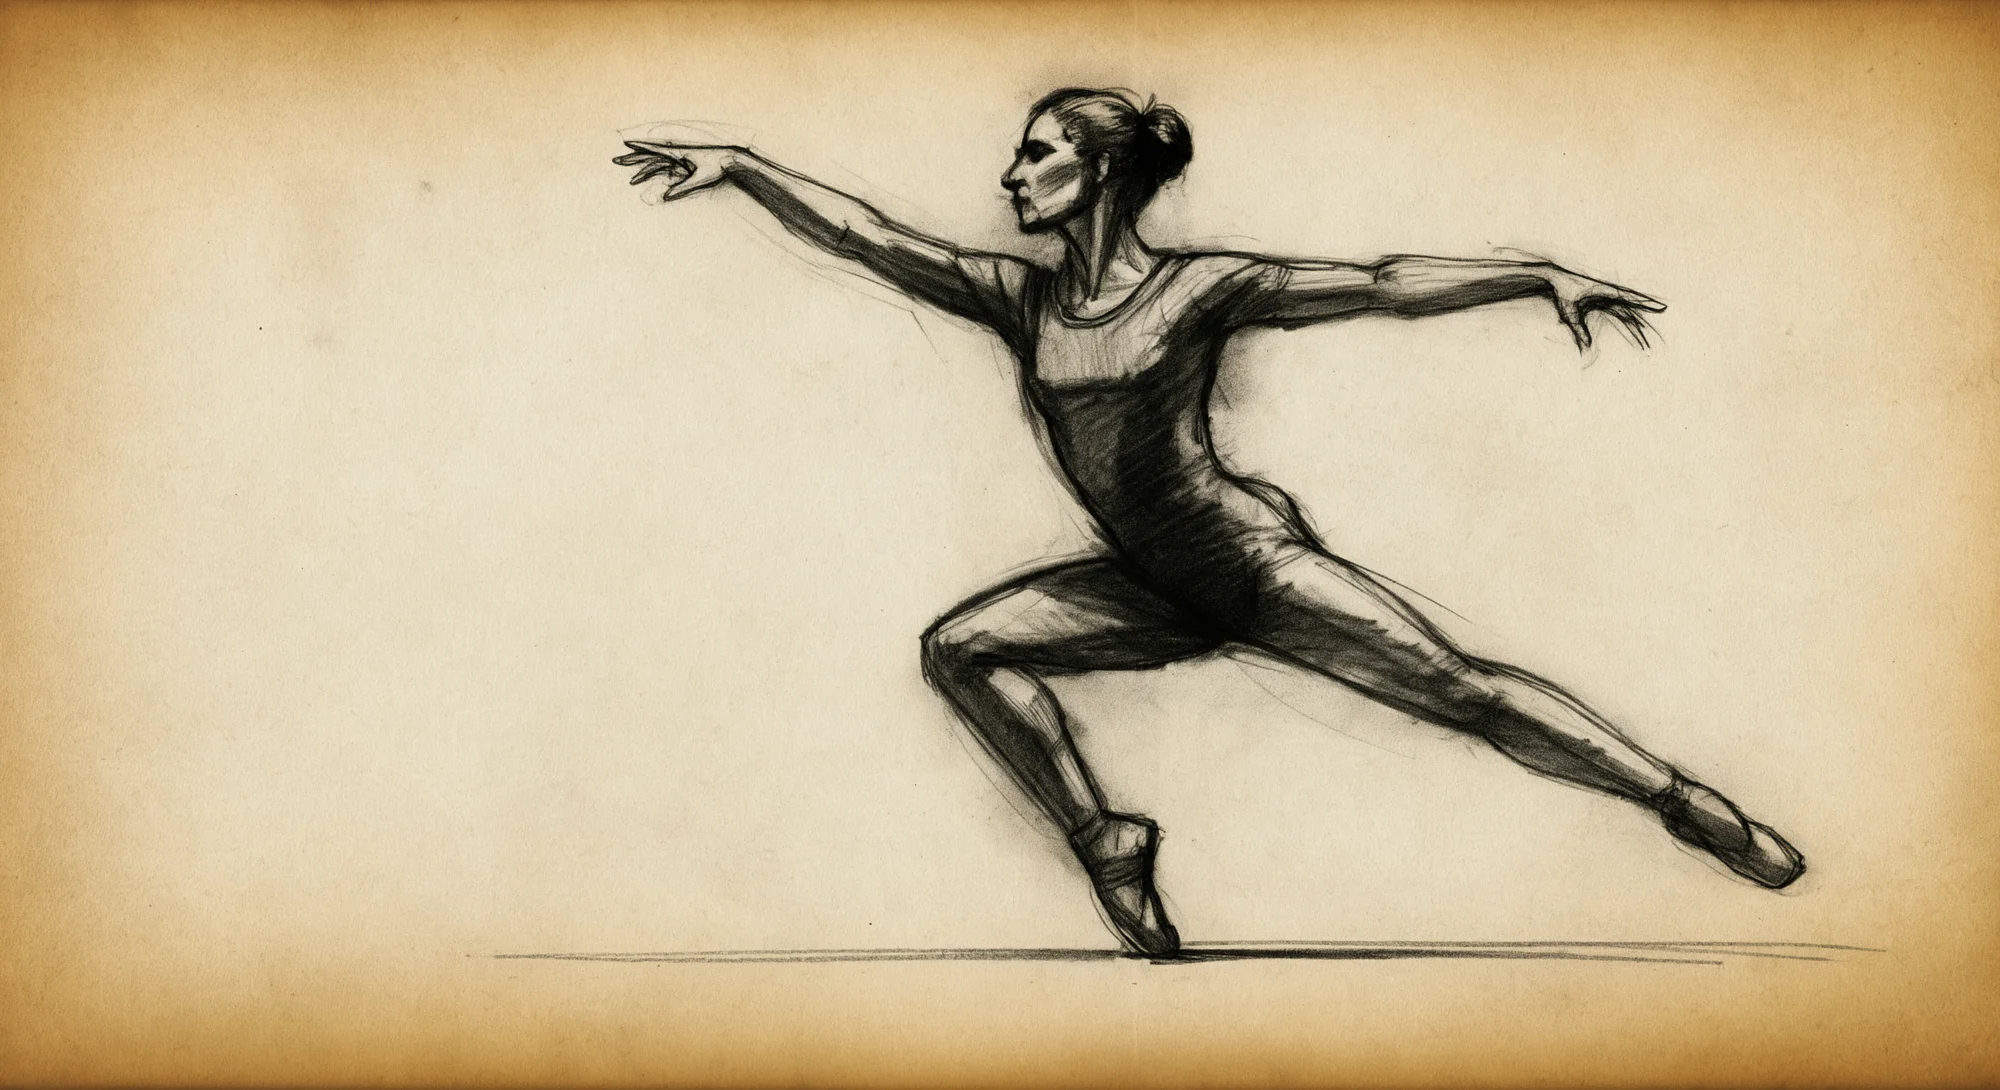 一幅女性舞者的动态动作炭笔素描。素描绘制在陈旧的羊皮纸上。